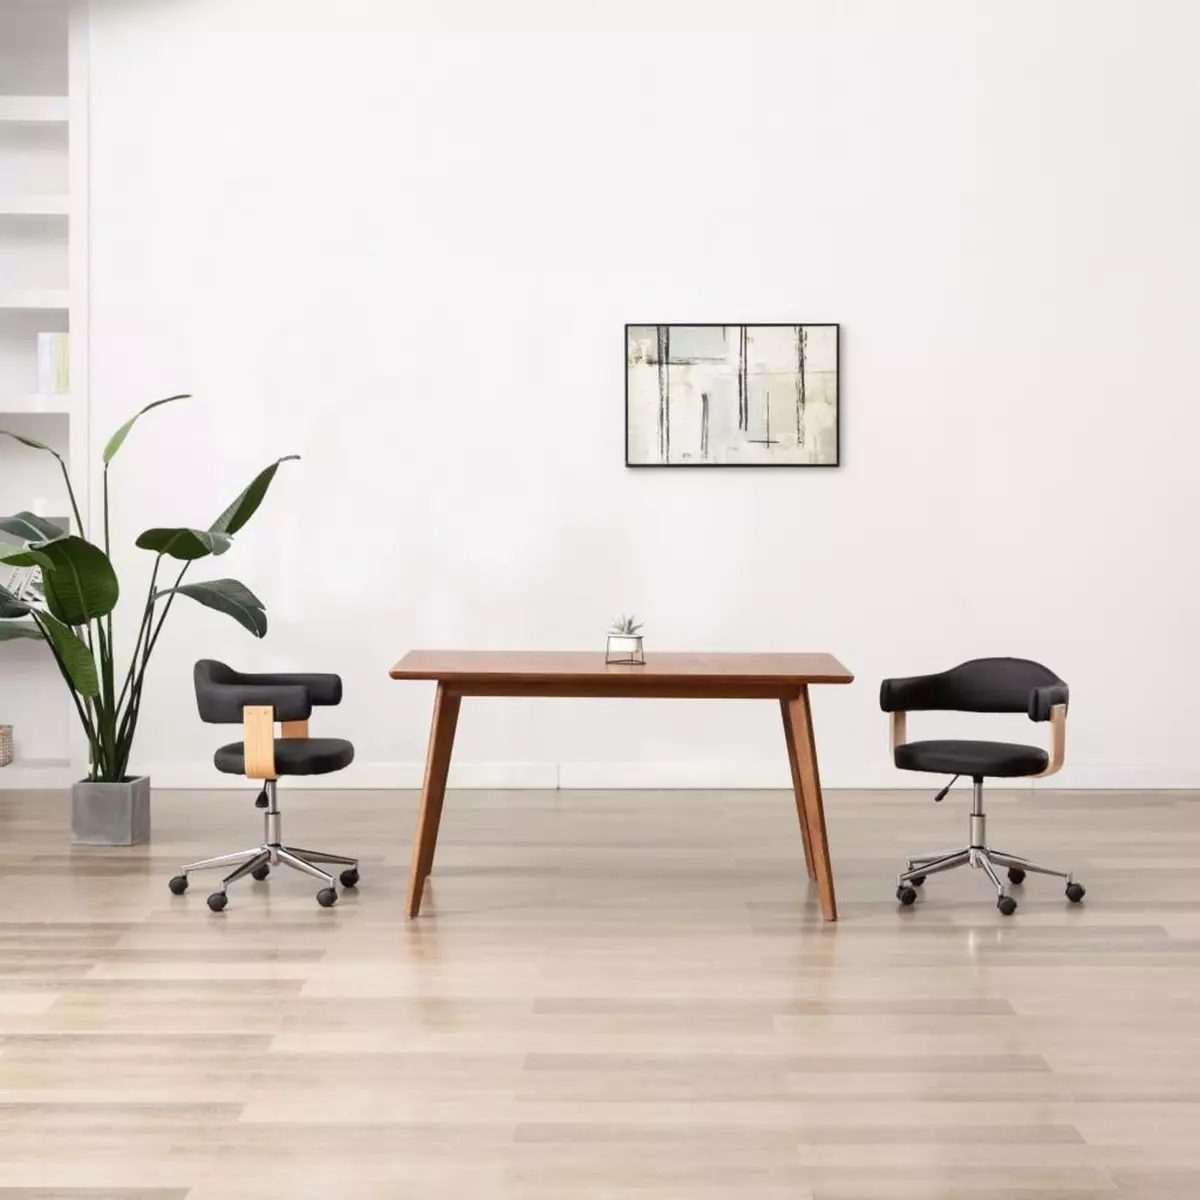 VIDAXL Chaise pivotante de bureau Noir Bois courbe et similicuir